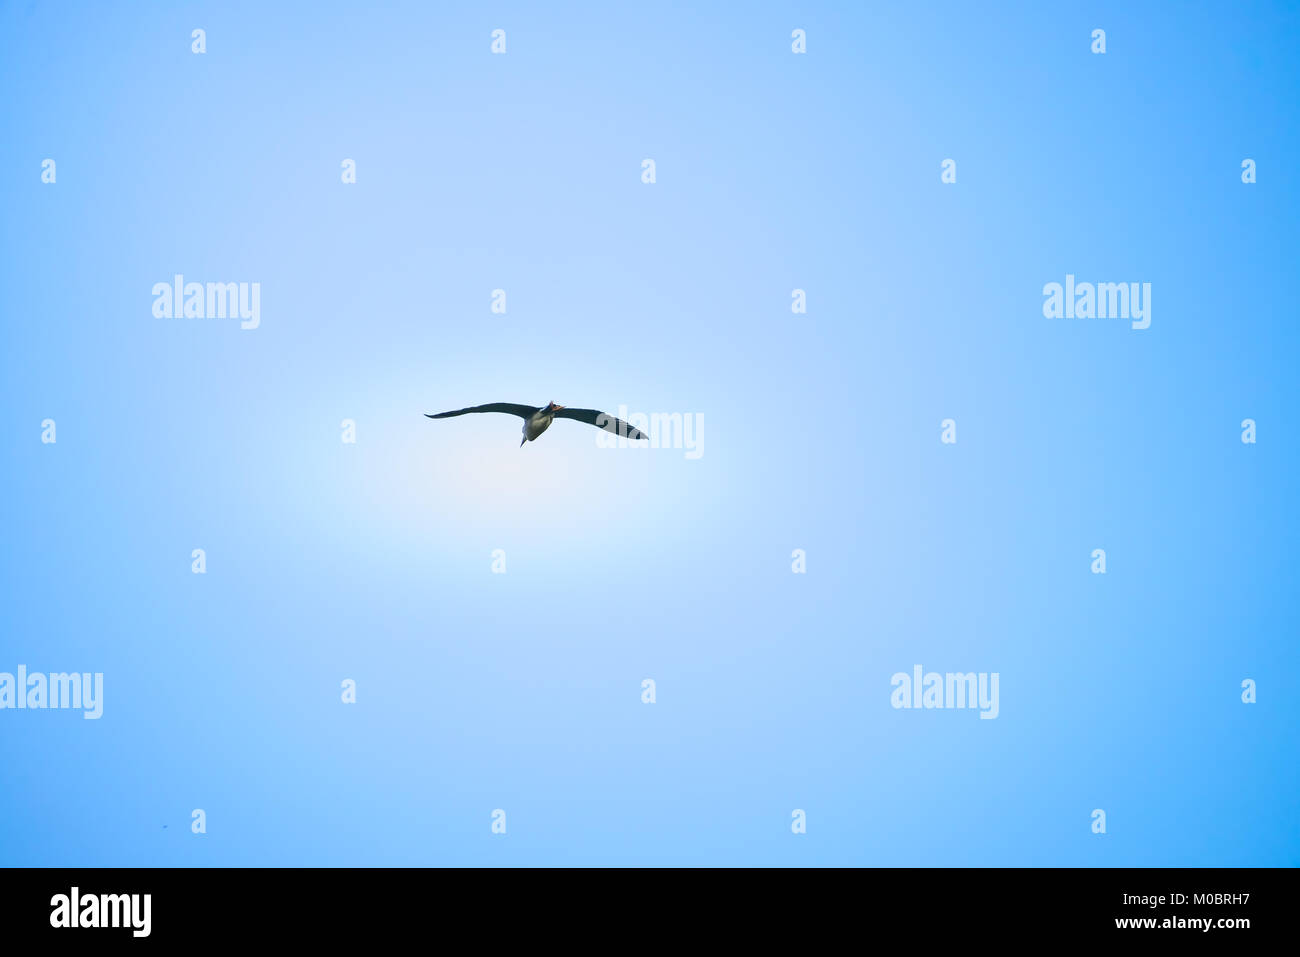 Incoronato nero uccello vola ad alta quota con cielo blu come sfondo Foto Stock